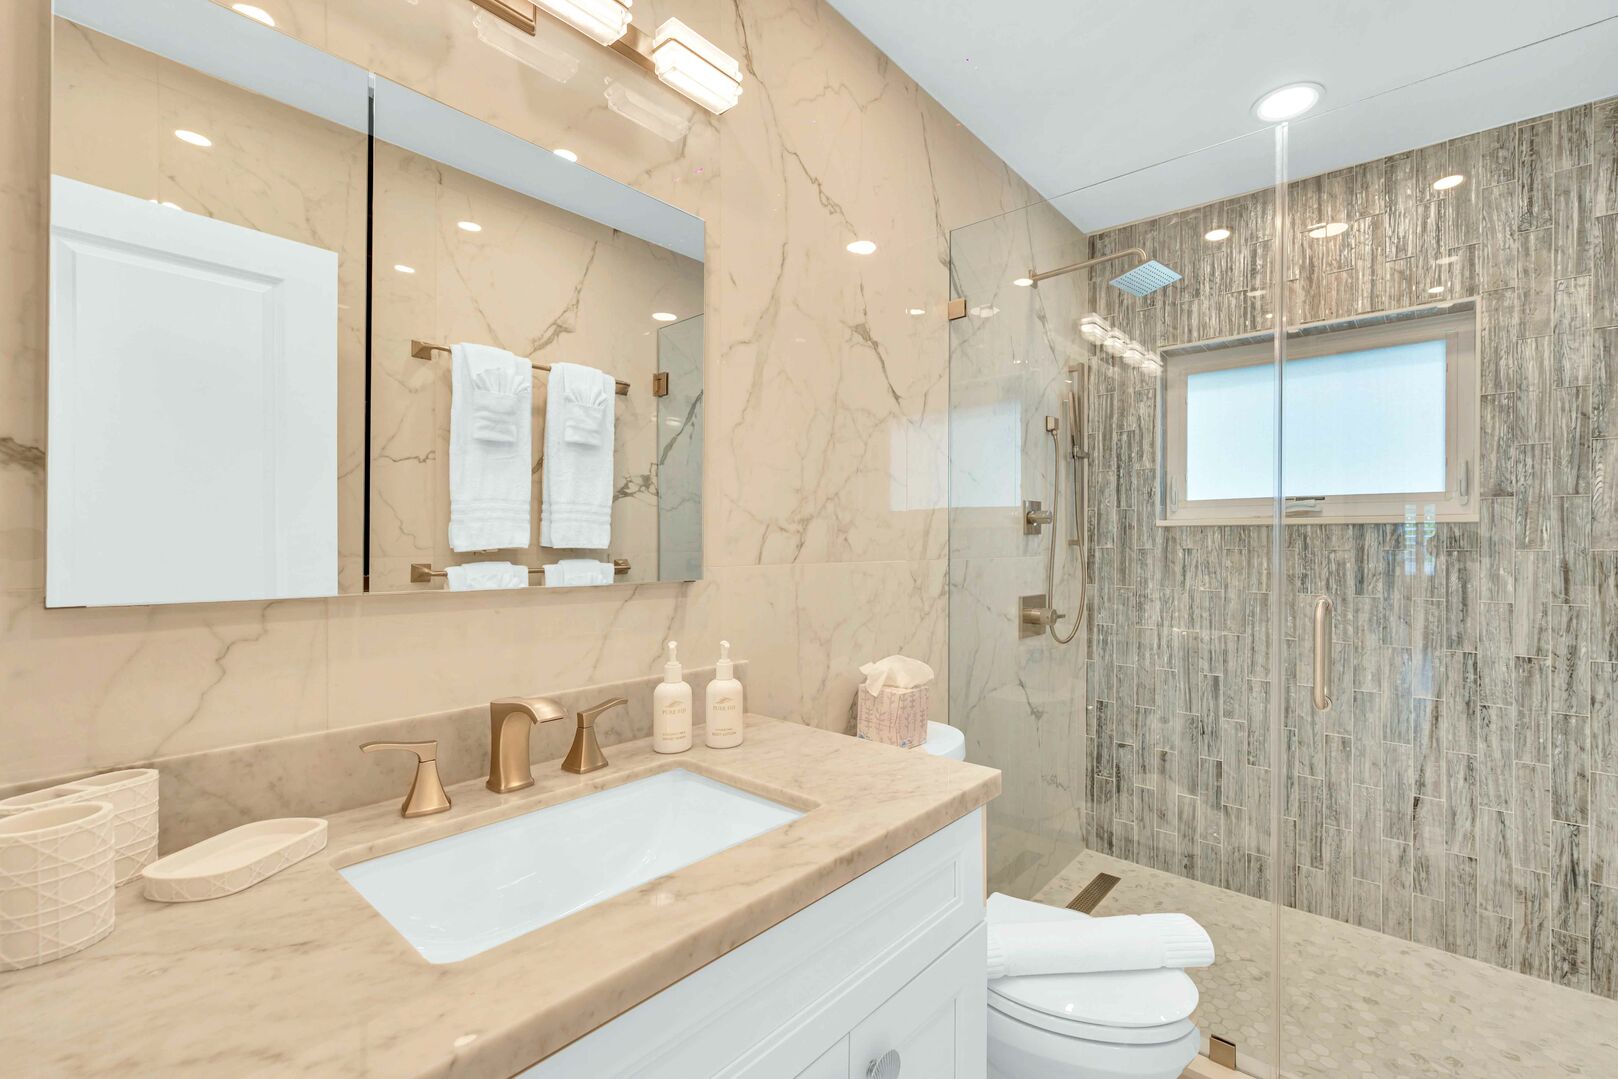 The bathroom between bedrooms 2 & 3 features a walk-in shower.